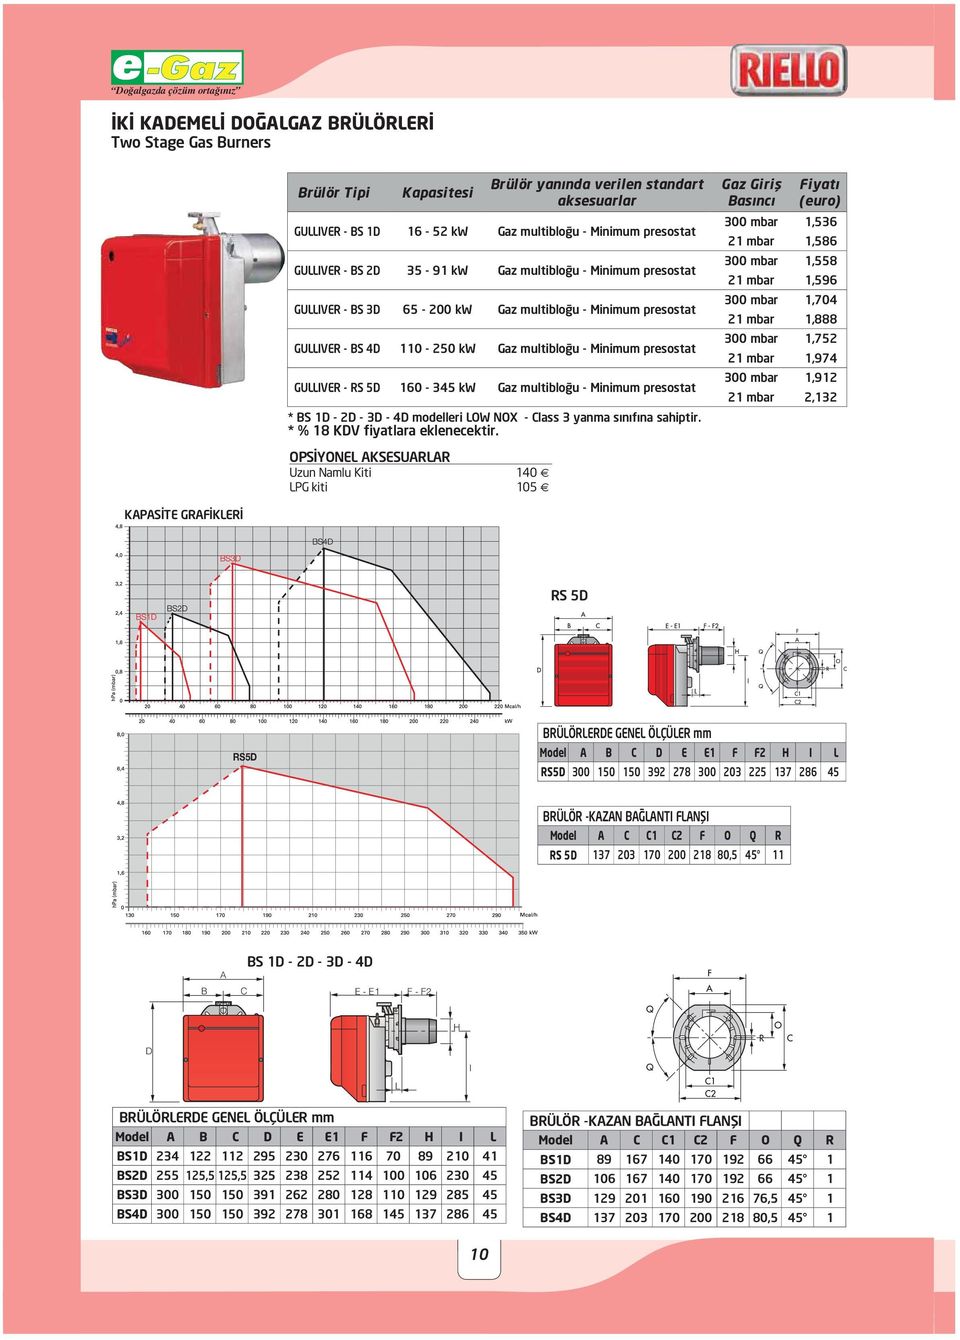 Gaz multiblo u - Minimum presostat * BS 1D - 2D - 3D - 4D modelleri LOW NOX - Class 3 yanma s n f na sahiptir.